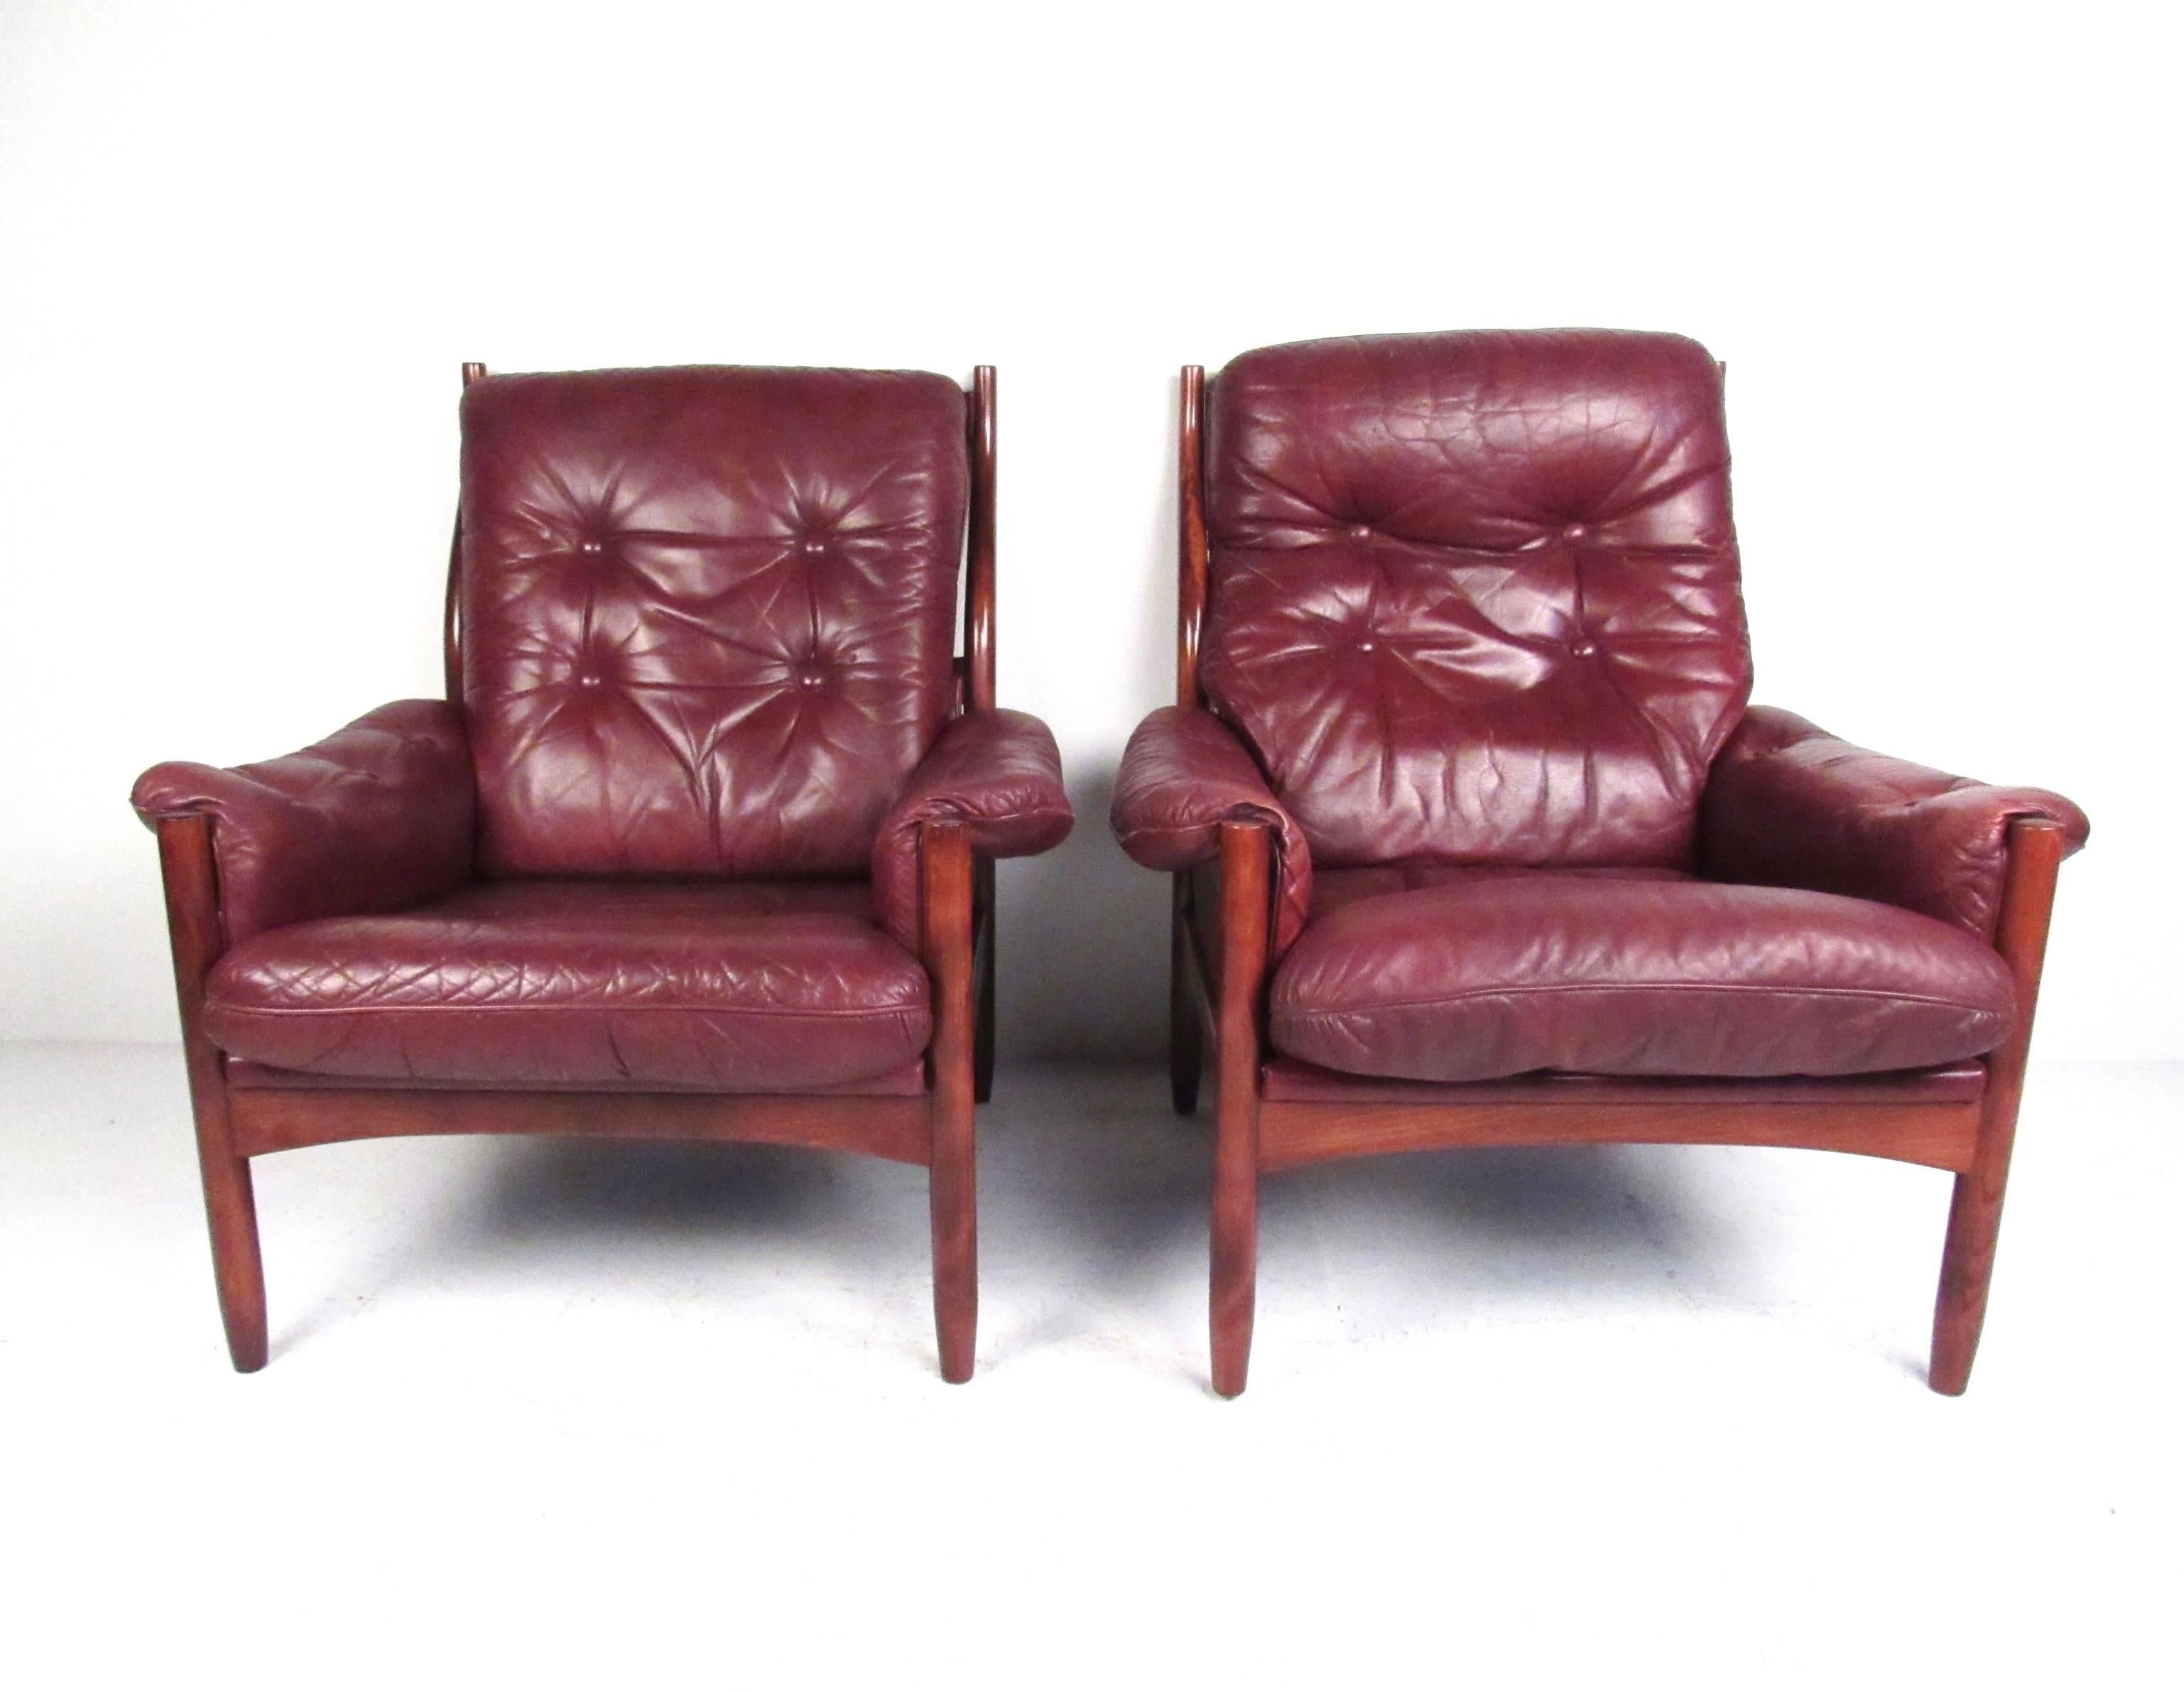 Cette magnifique paire de chaises longues de style scandinave moderne est dotée d'un cuir vintage touffeté, d'un cadre élégant et fin en bois de rose et d'un design danois unique. Le contour confortable et élégant du dossier ajoute à l'attrait